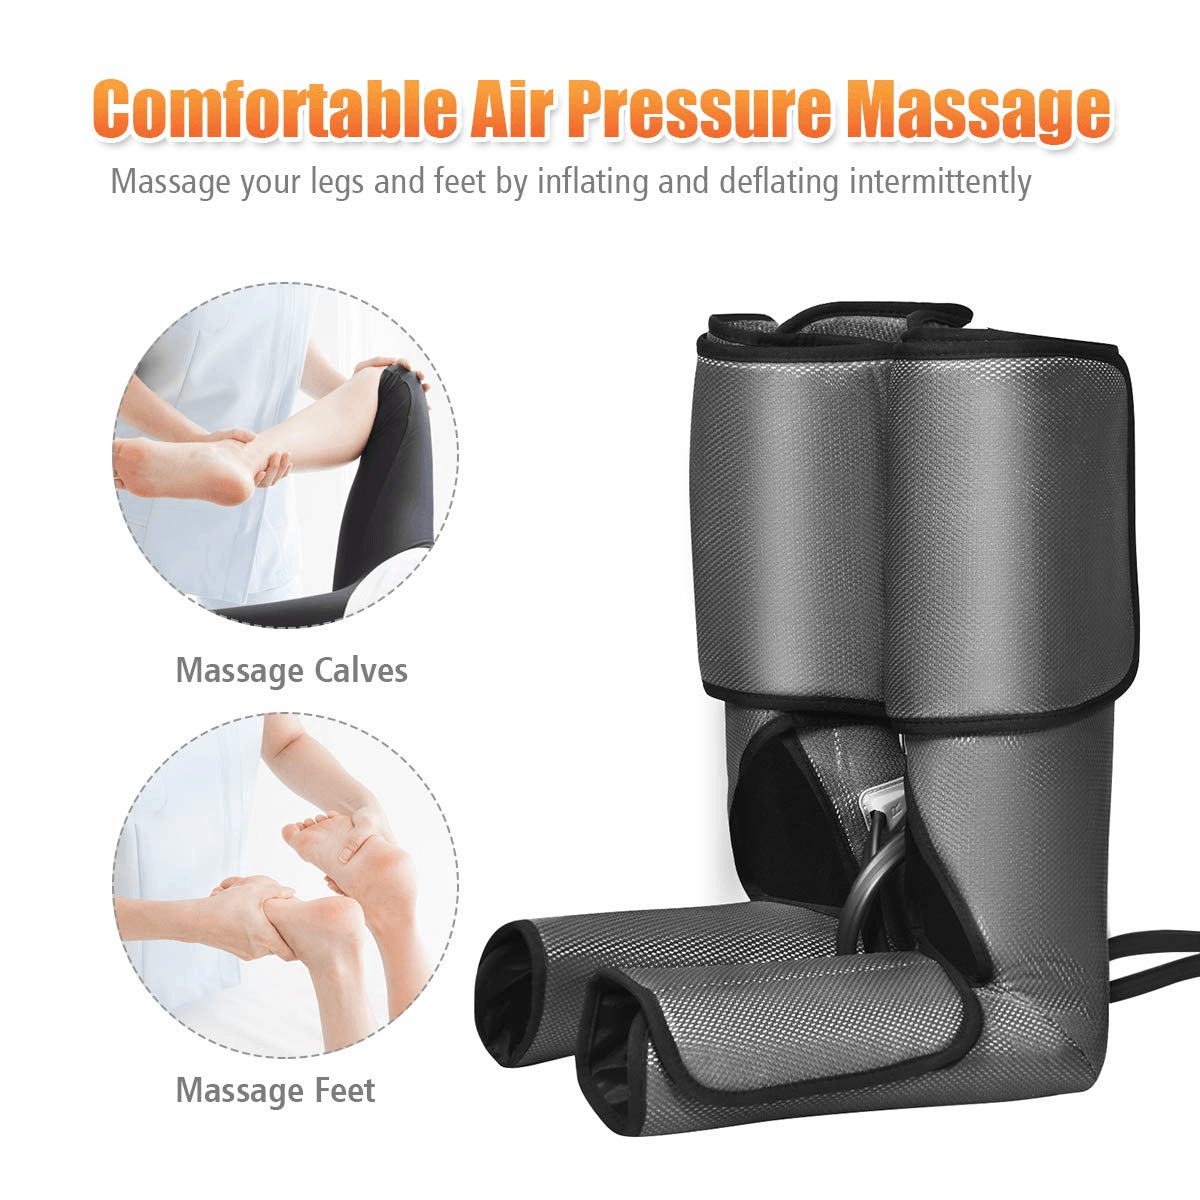 Giantex Foot Leg Massager, Foot and Calf Massage with Handheld Controller, 3 Modes 3 Intensities - Giantexus